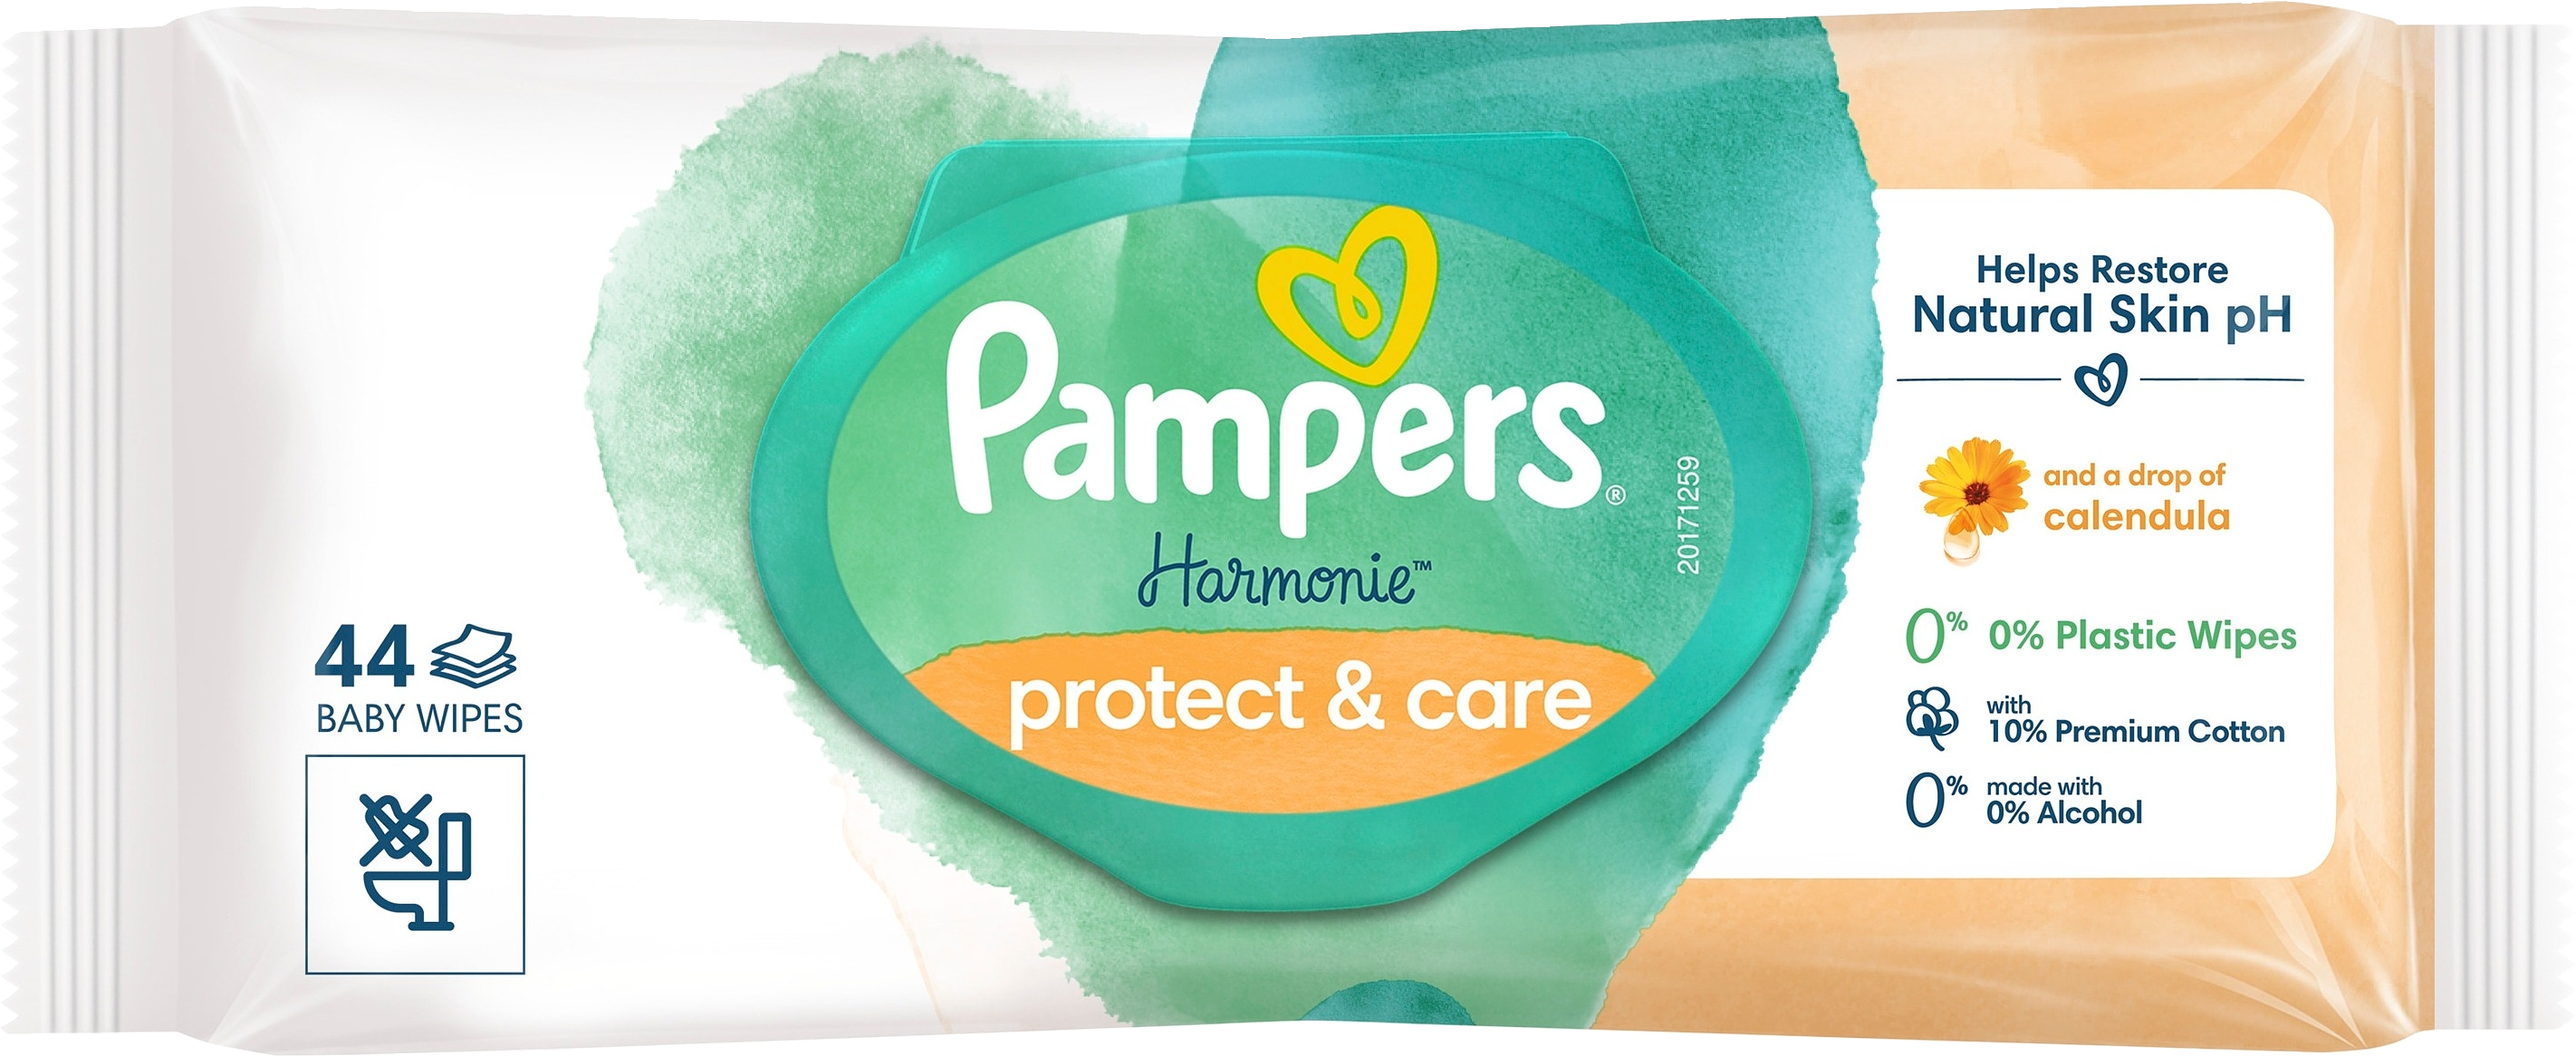 Pampers Harmonie protect & care 44kpl puhdistuspyyhe